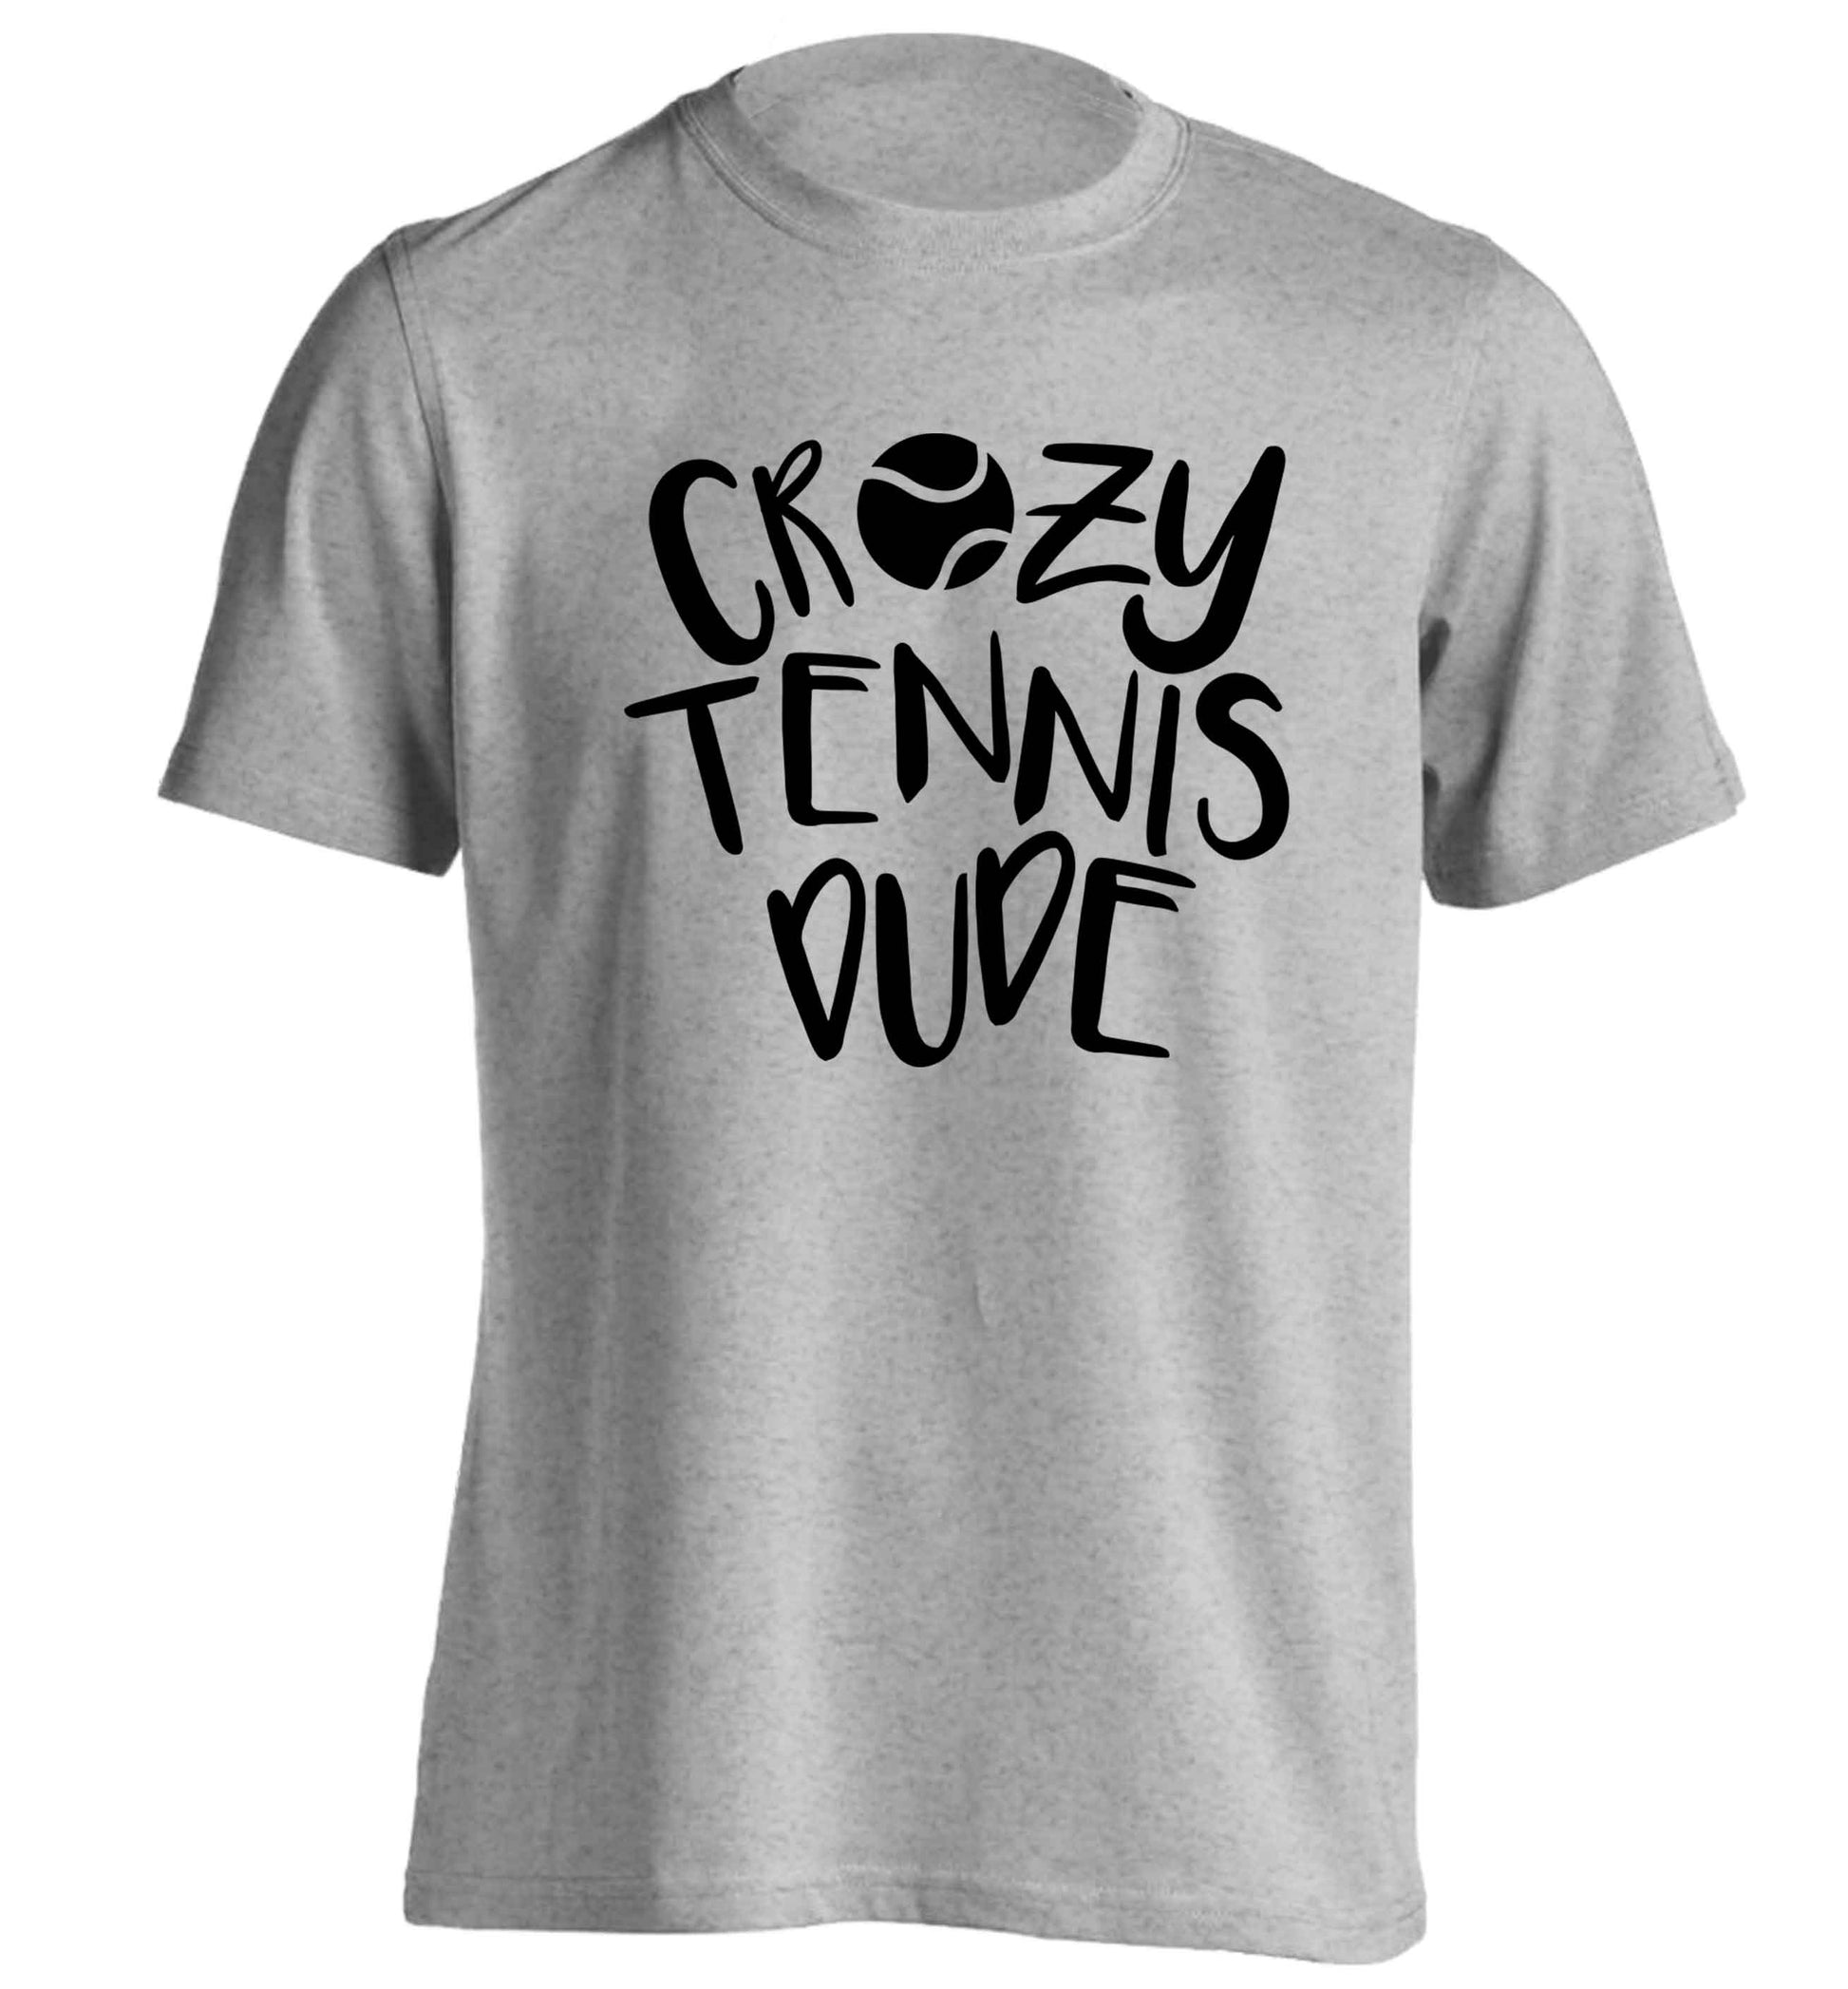 Crazy tennis dude adults unisex grey Tshirt 2XL